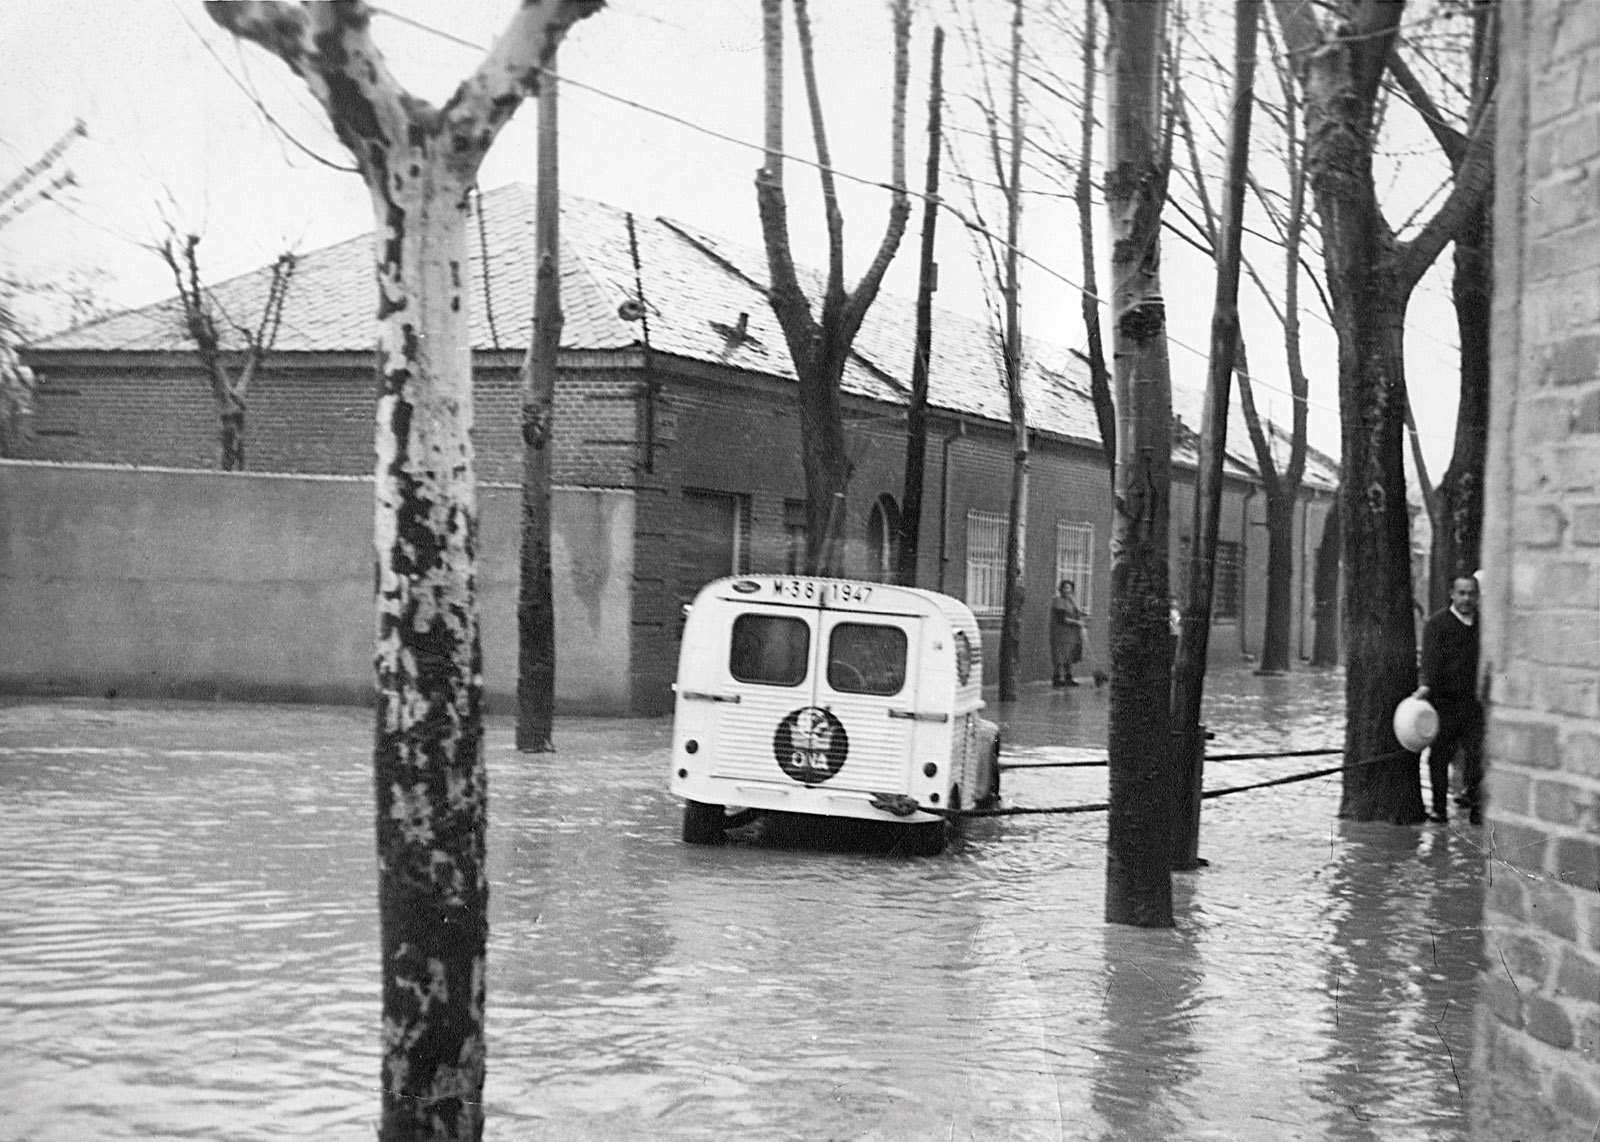 La calle Boltaña era un arroyo sin canalizar y las riadas eran habituales, hasta los años 70 no fue urbanizada.